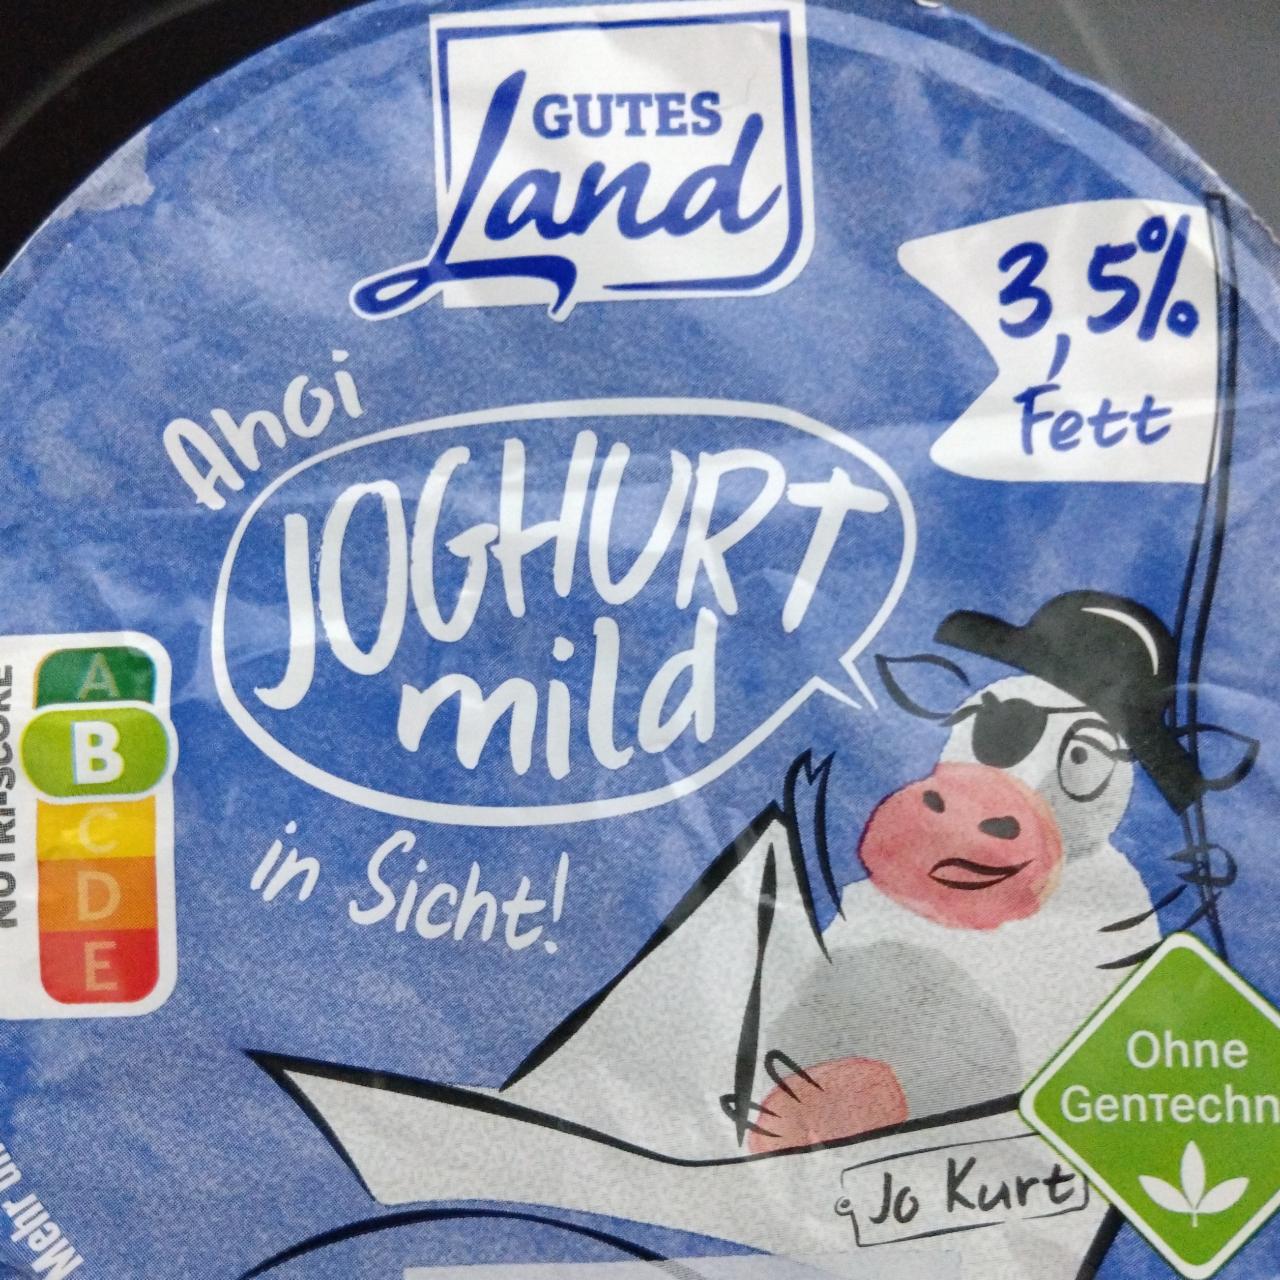 Фото - Joghurt mild 3.5% Gutes Land